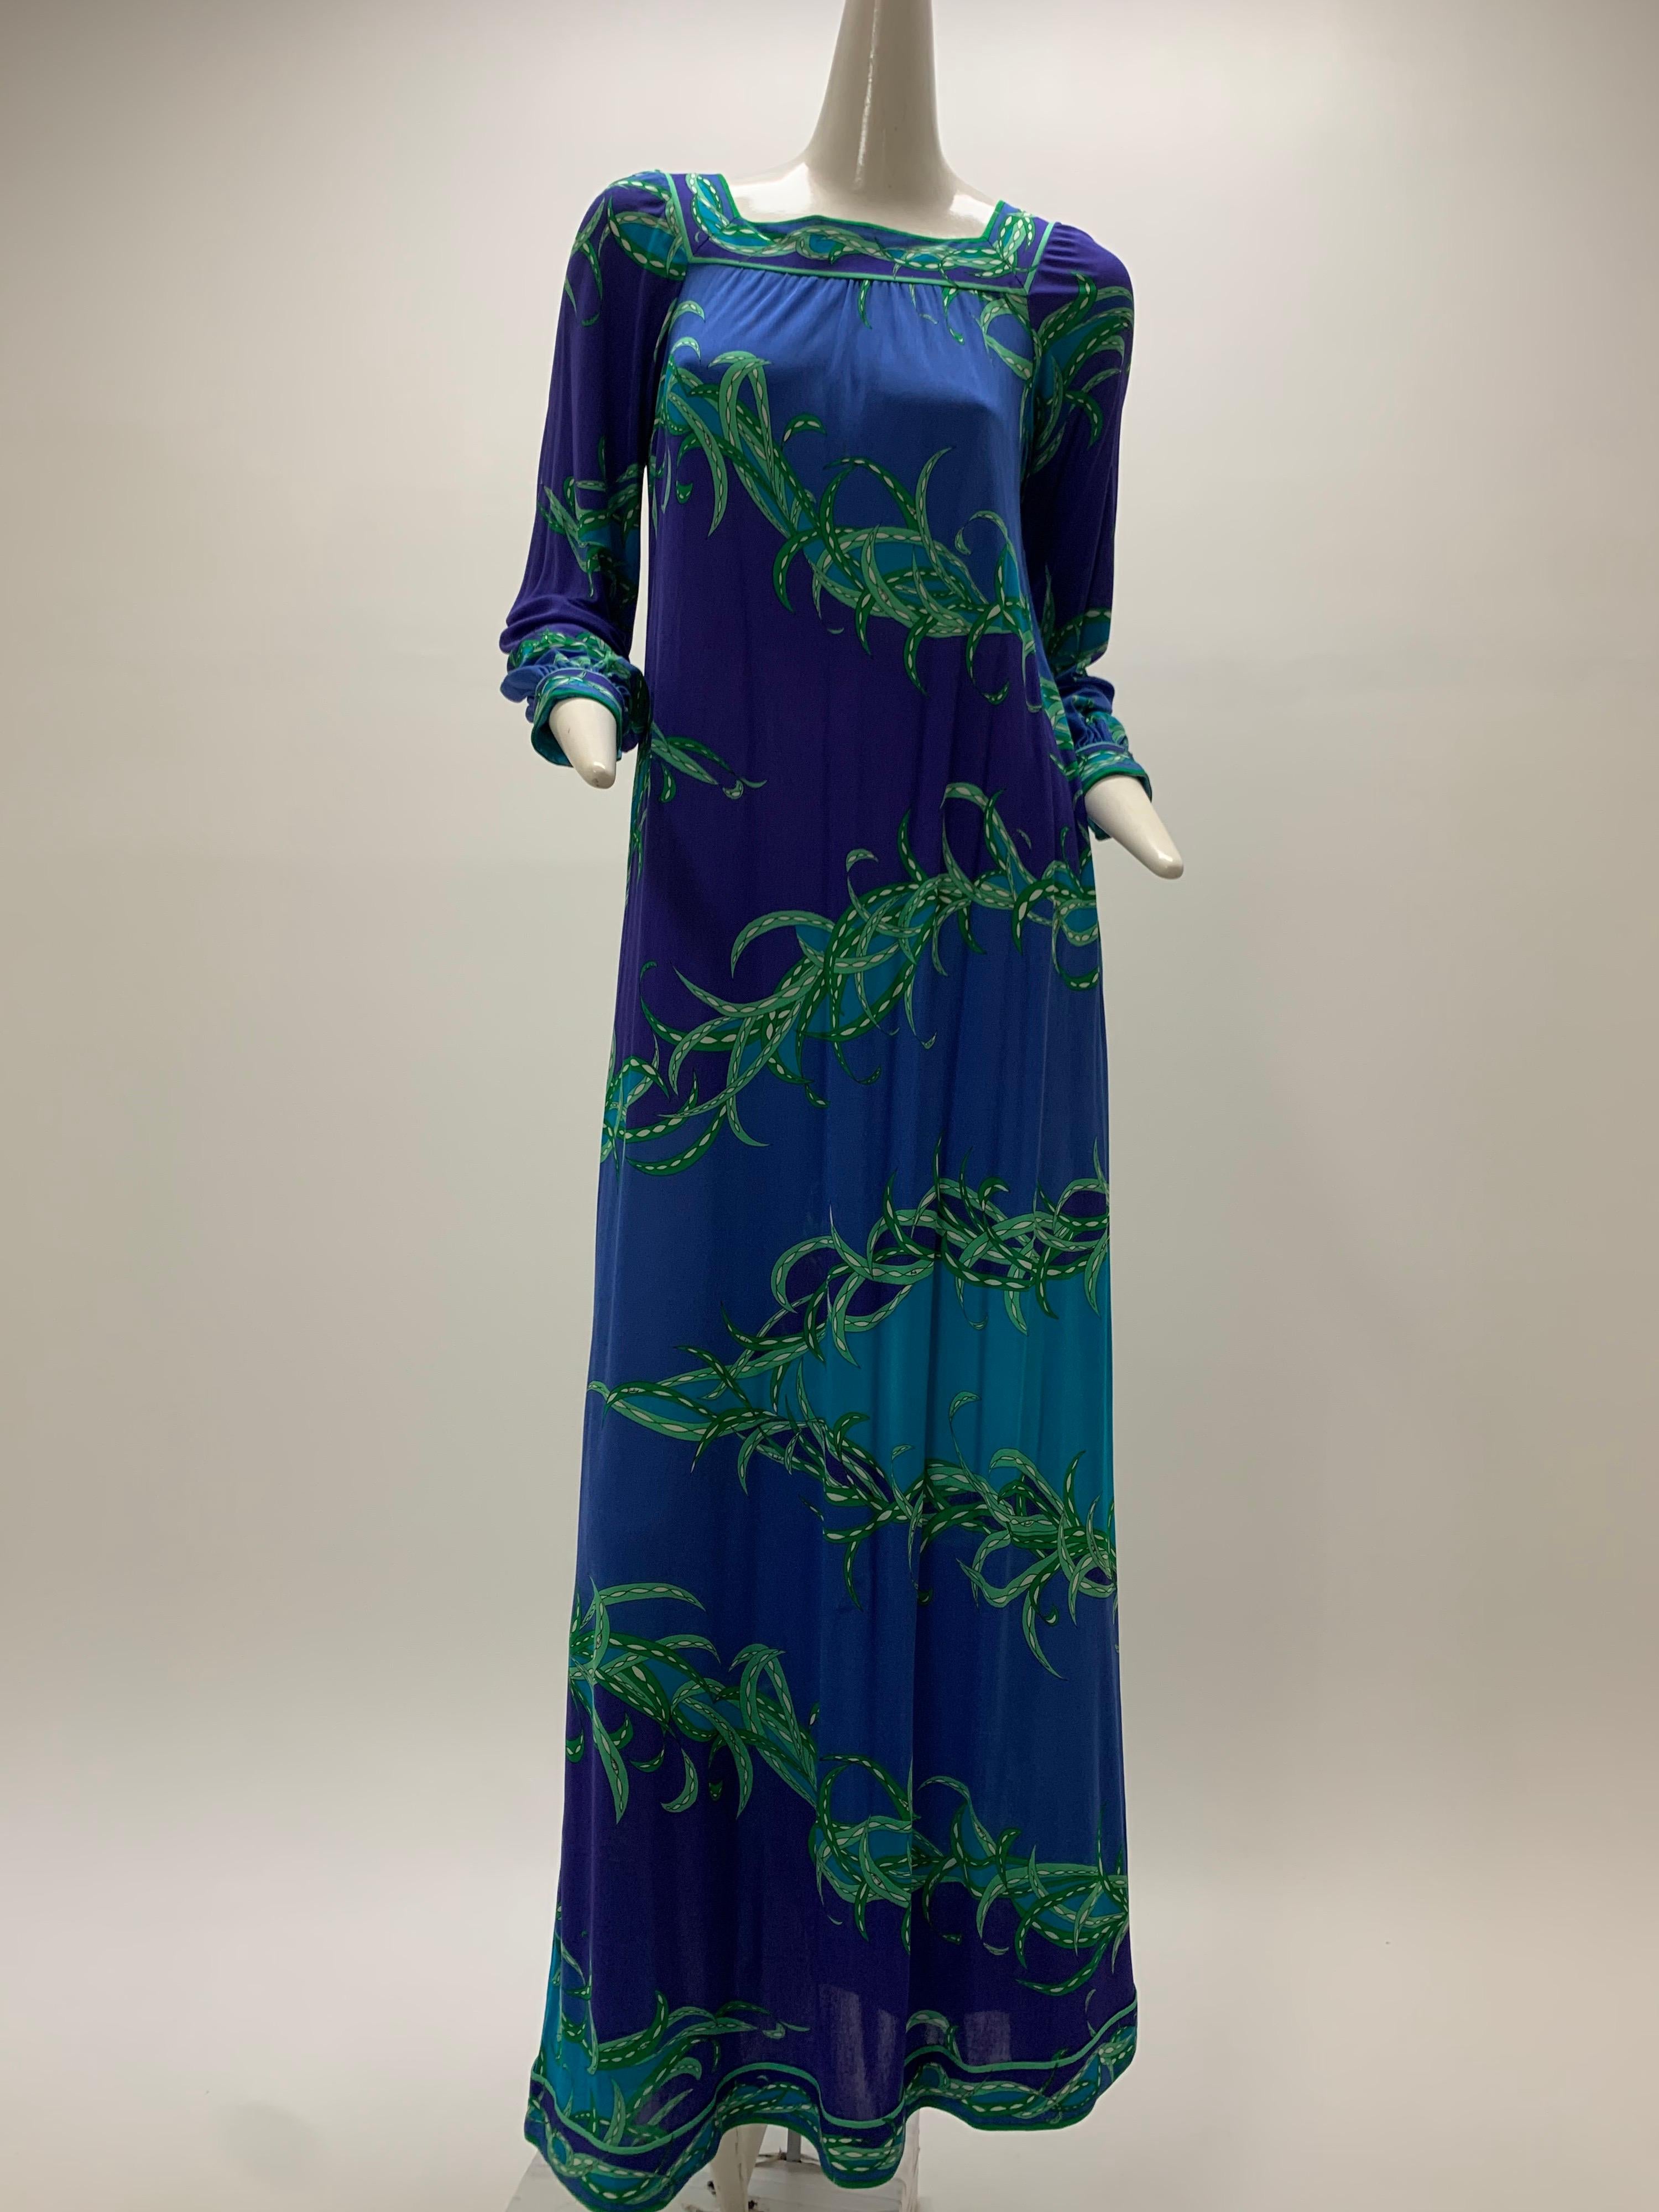 Ein wunderschönes langärmeliges Emilio Pucci Maxikleid aus Seidenjersey aus den 1970er Jahren in den Farben lila, blau, aqua und grün. Bündchen an Ärmeln und Saum sowie quadratischer Halsausschnitt. Schlüpfendes Design im Schichtstil.